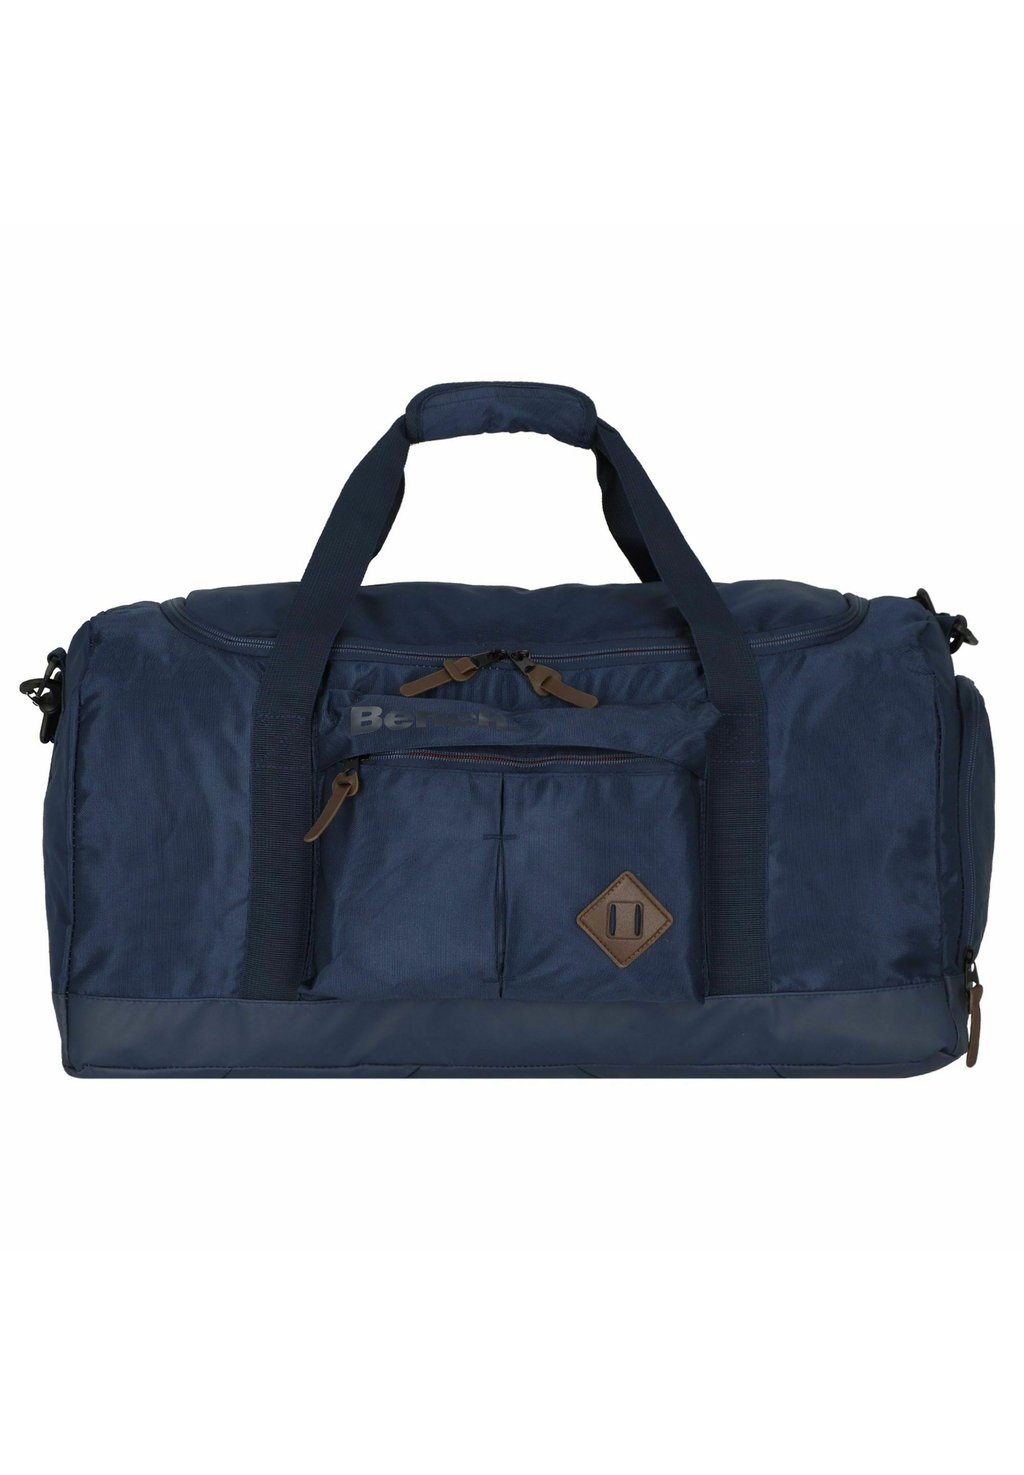 Дорожная сумка TERRA Bench, цвет dunkelblau